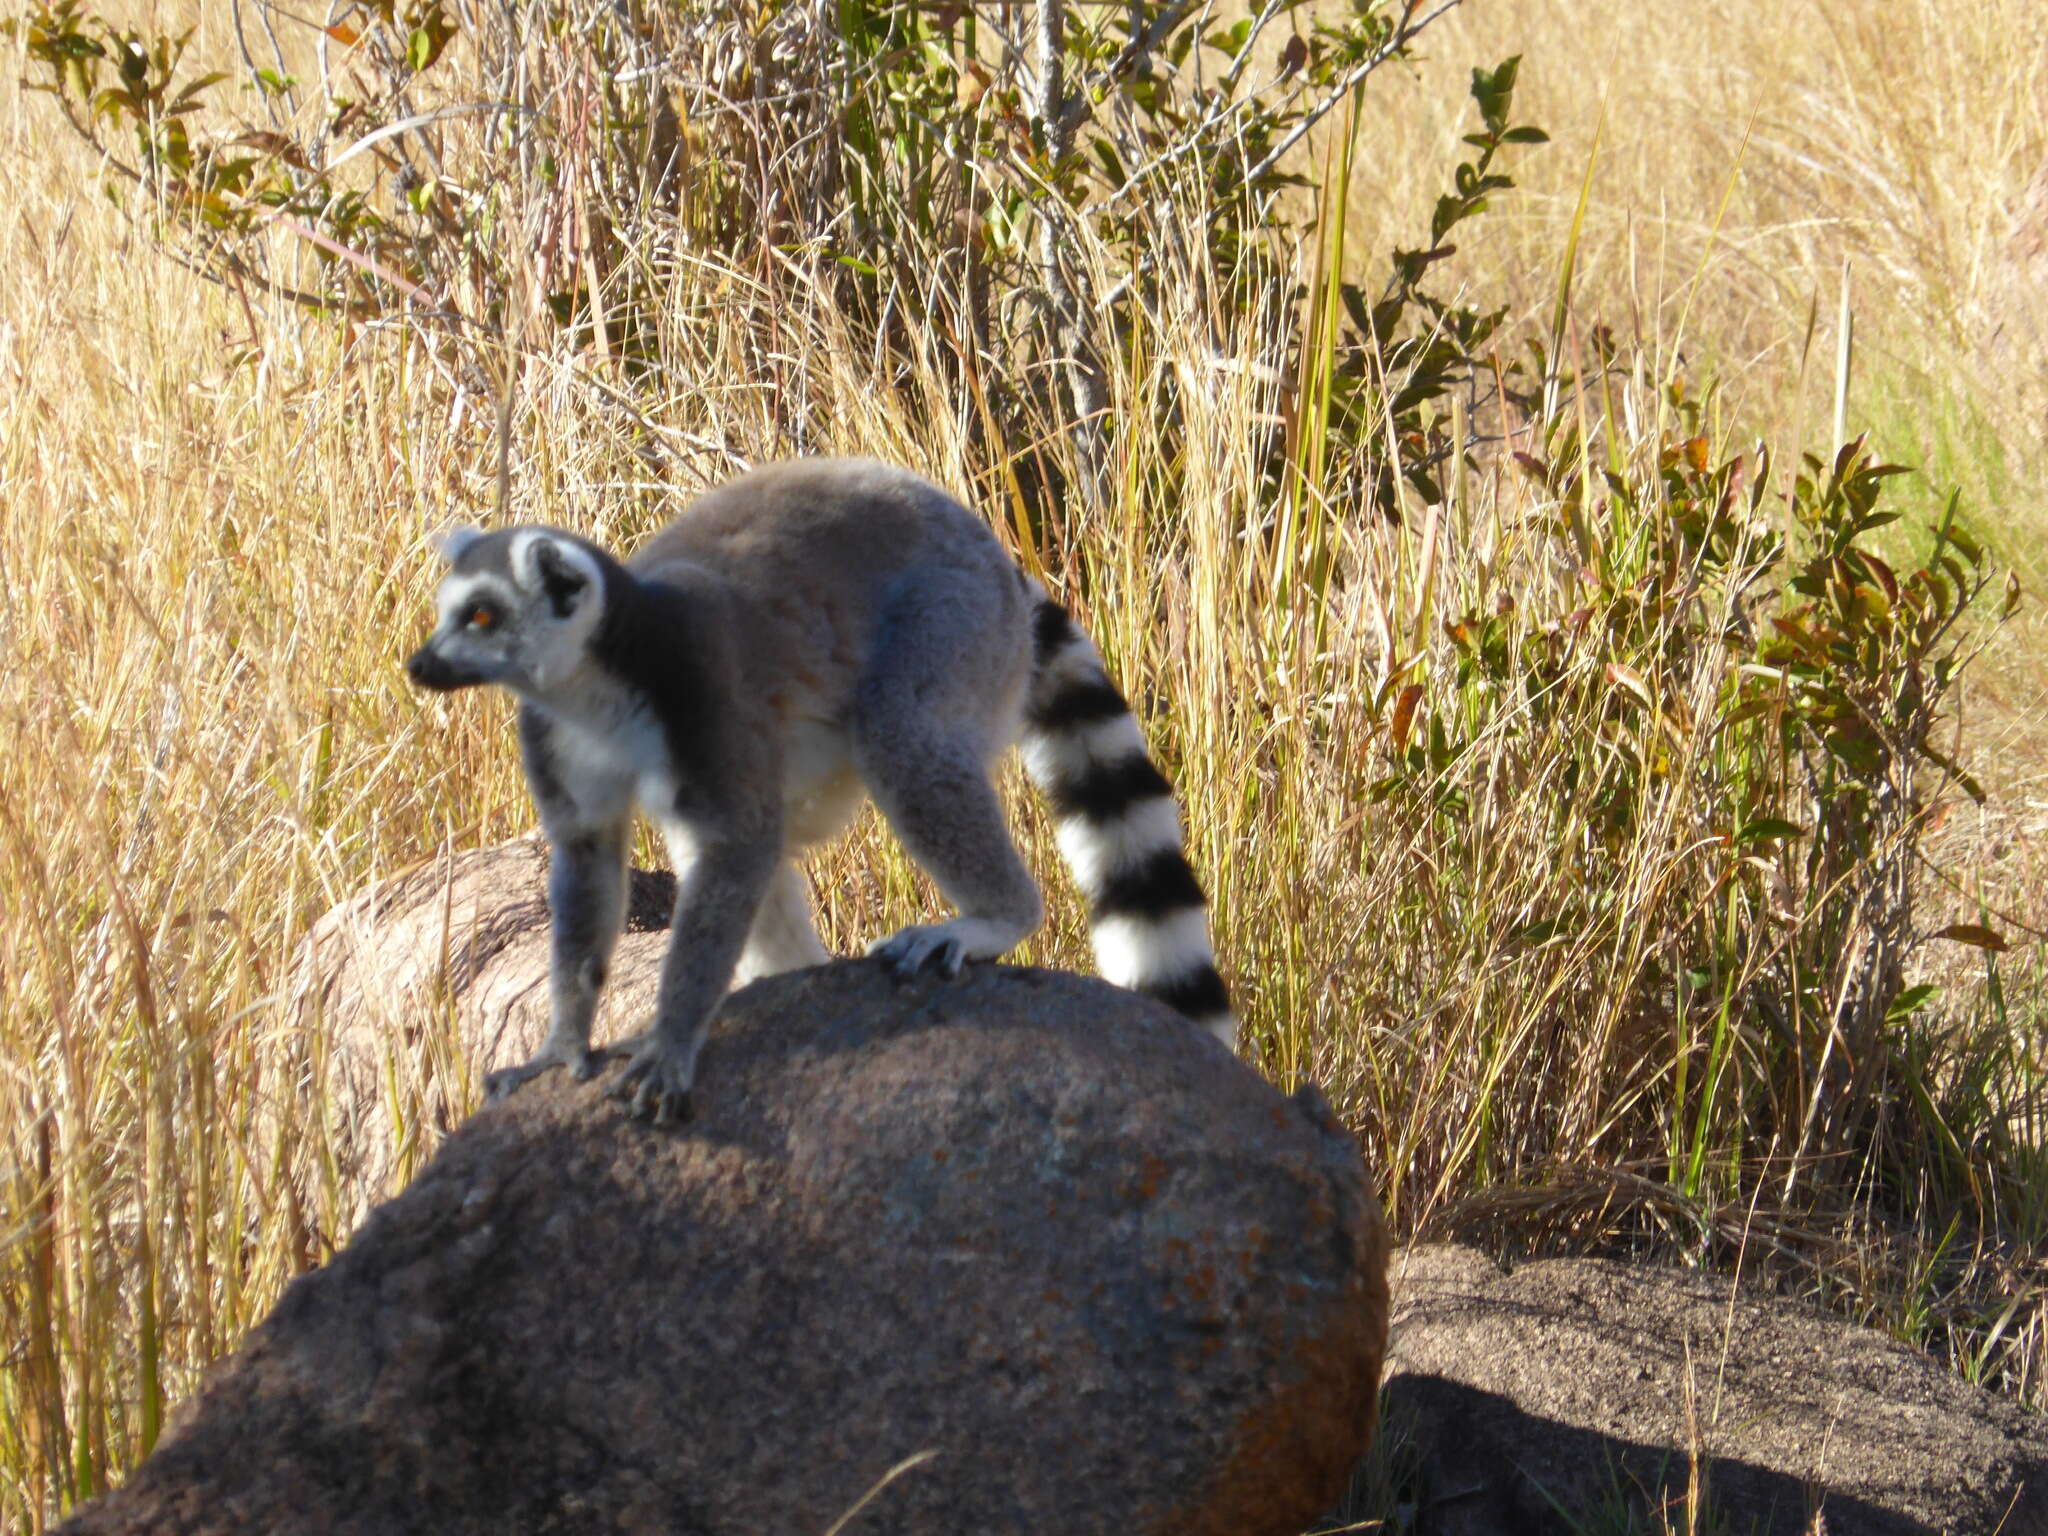 Image de Lemur Linnaeus 1758